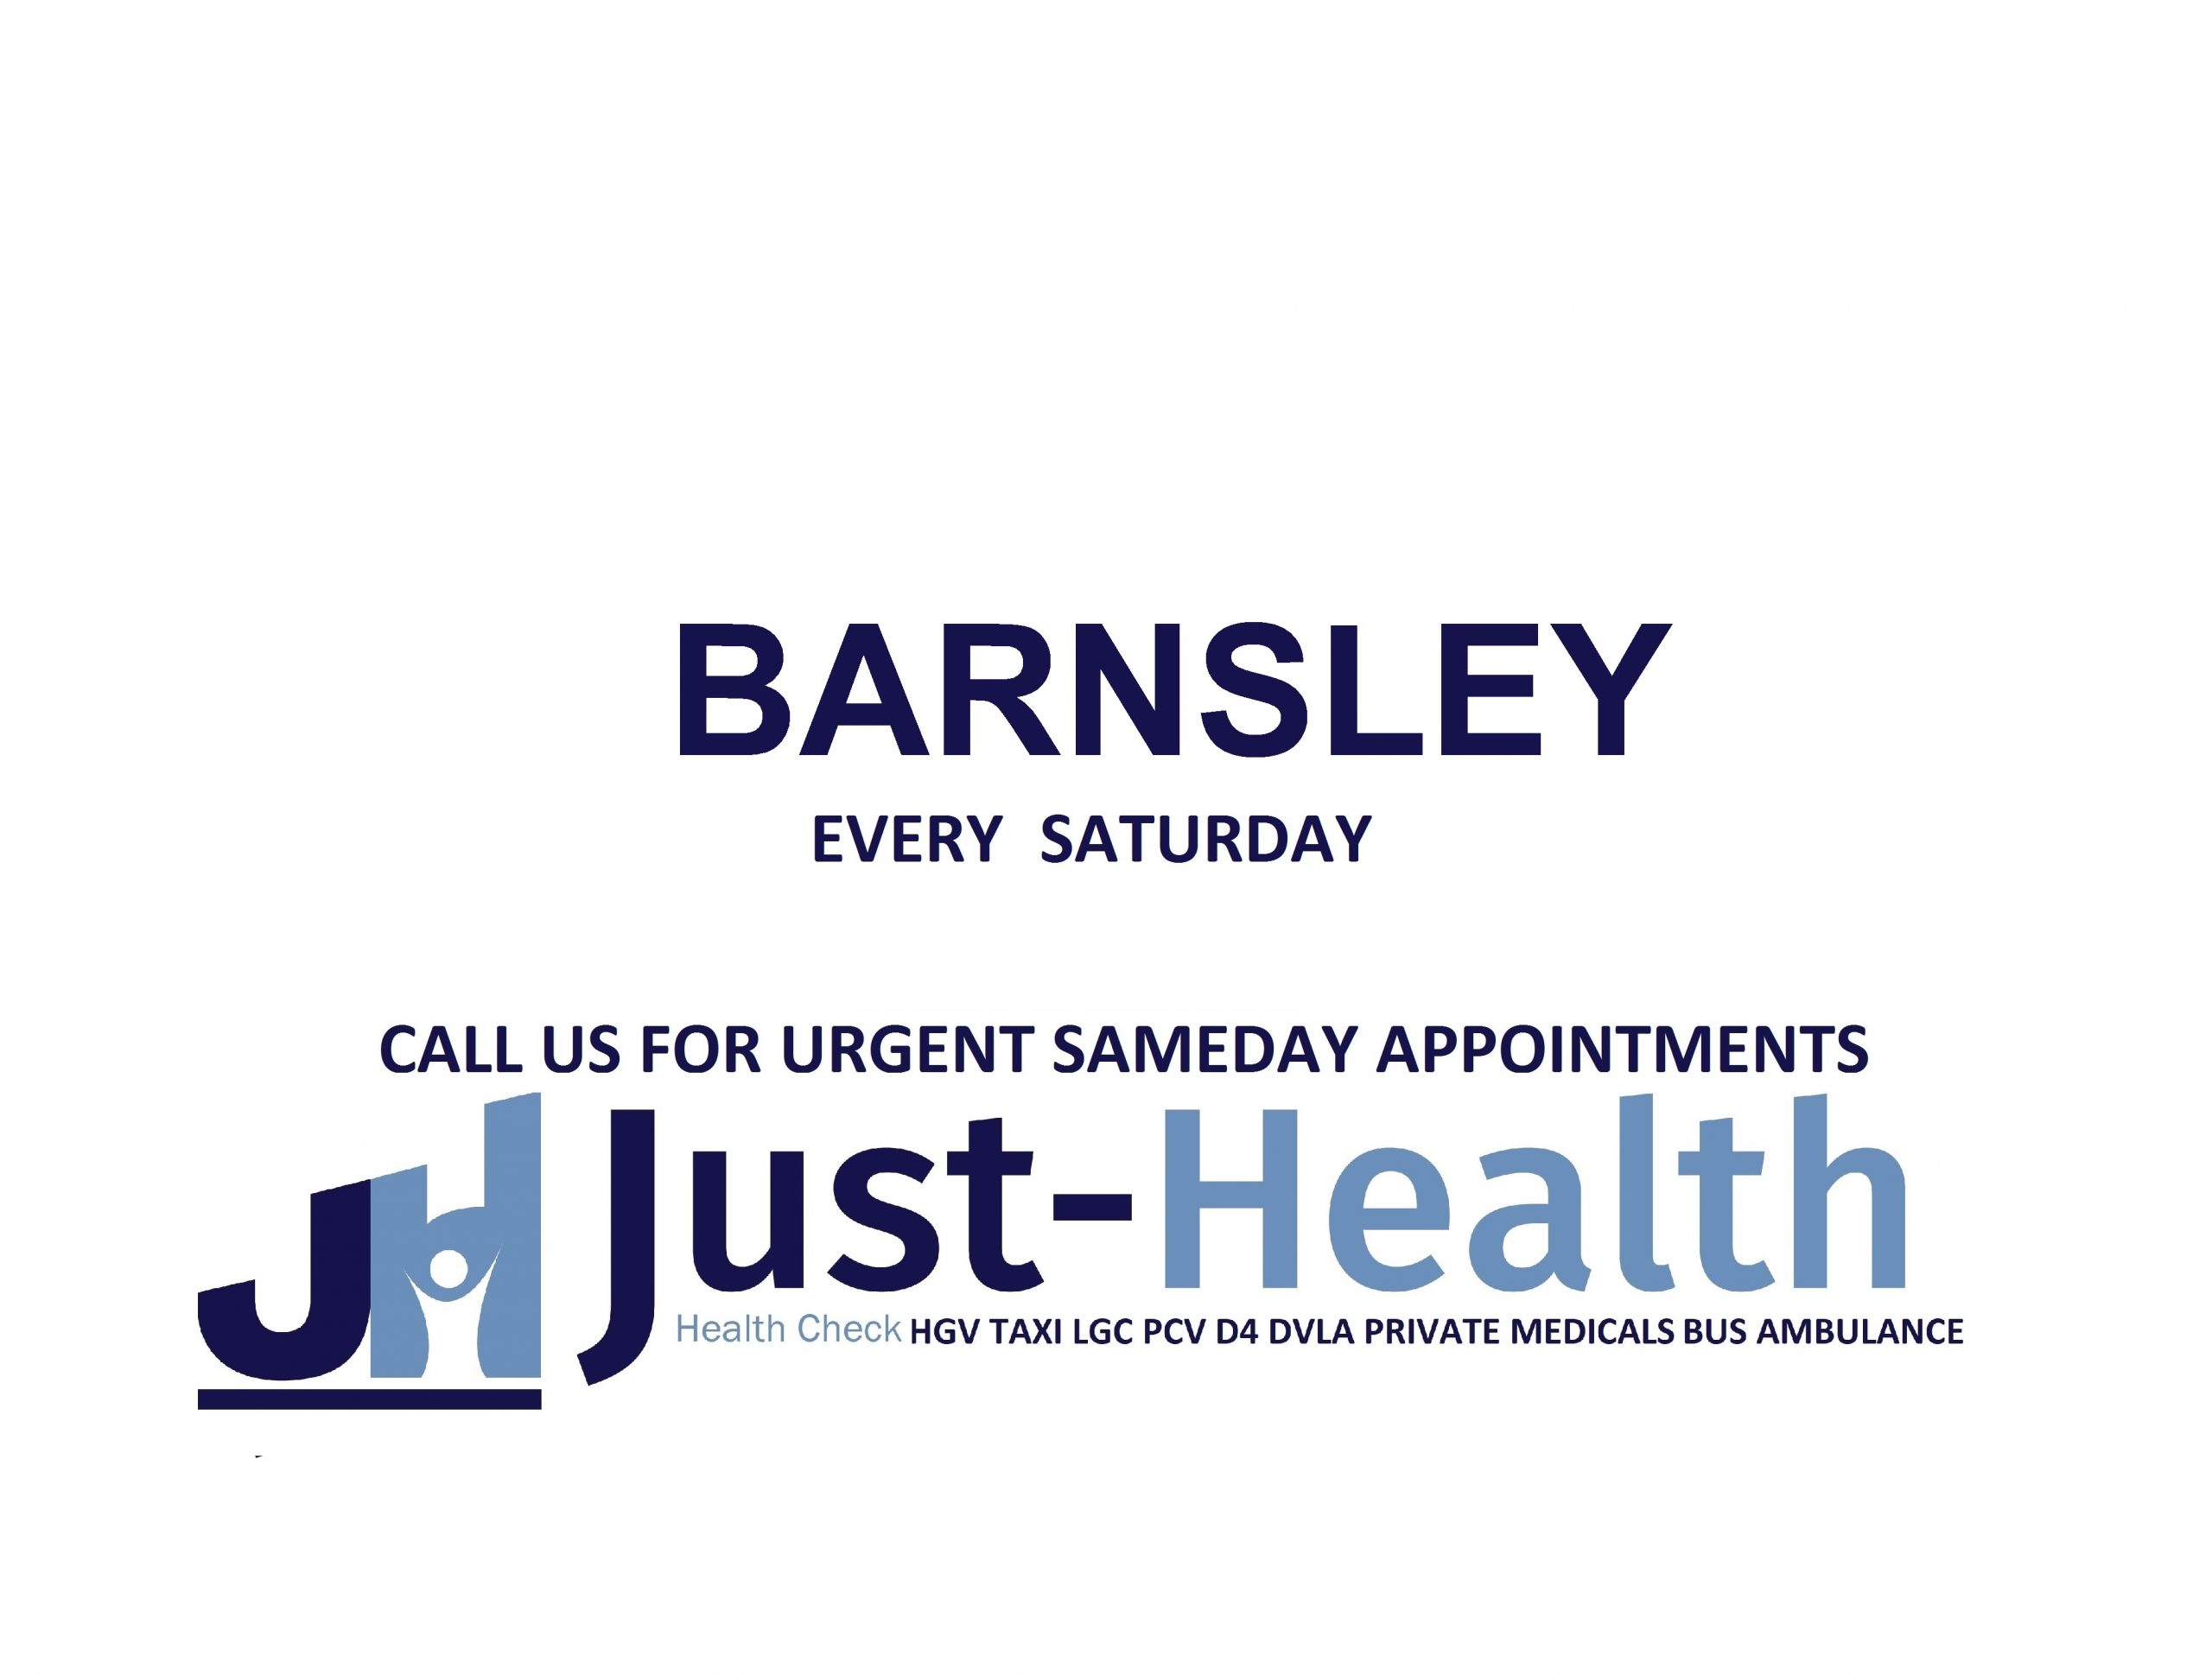 JUST HEALTH barnsley HGV Medical